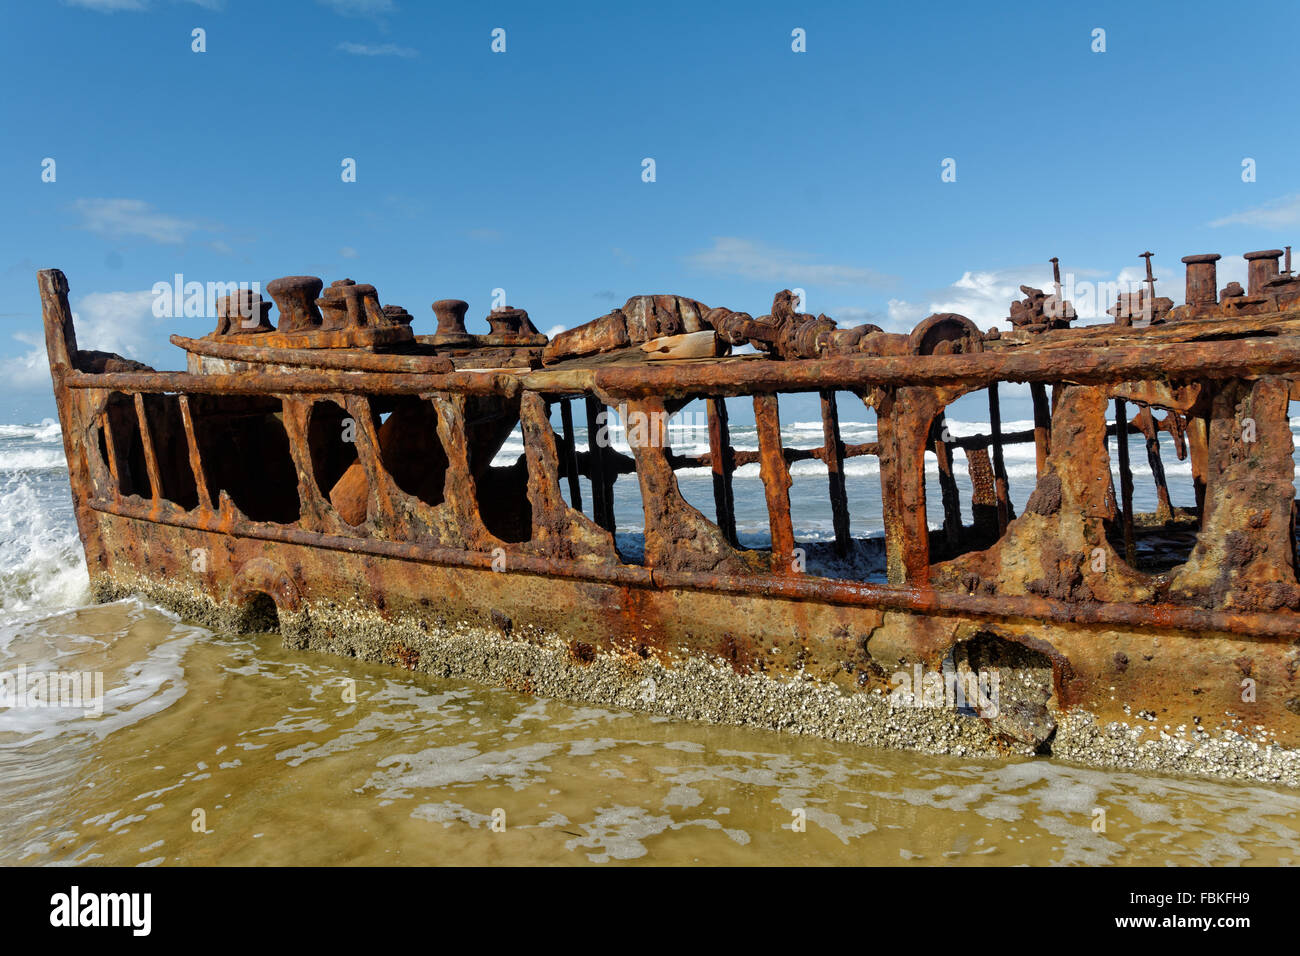 Die rosten Hulk der SS Maheno liegen auf einem Strand auf Fraser Island, Queensland Stockfoto